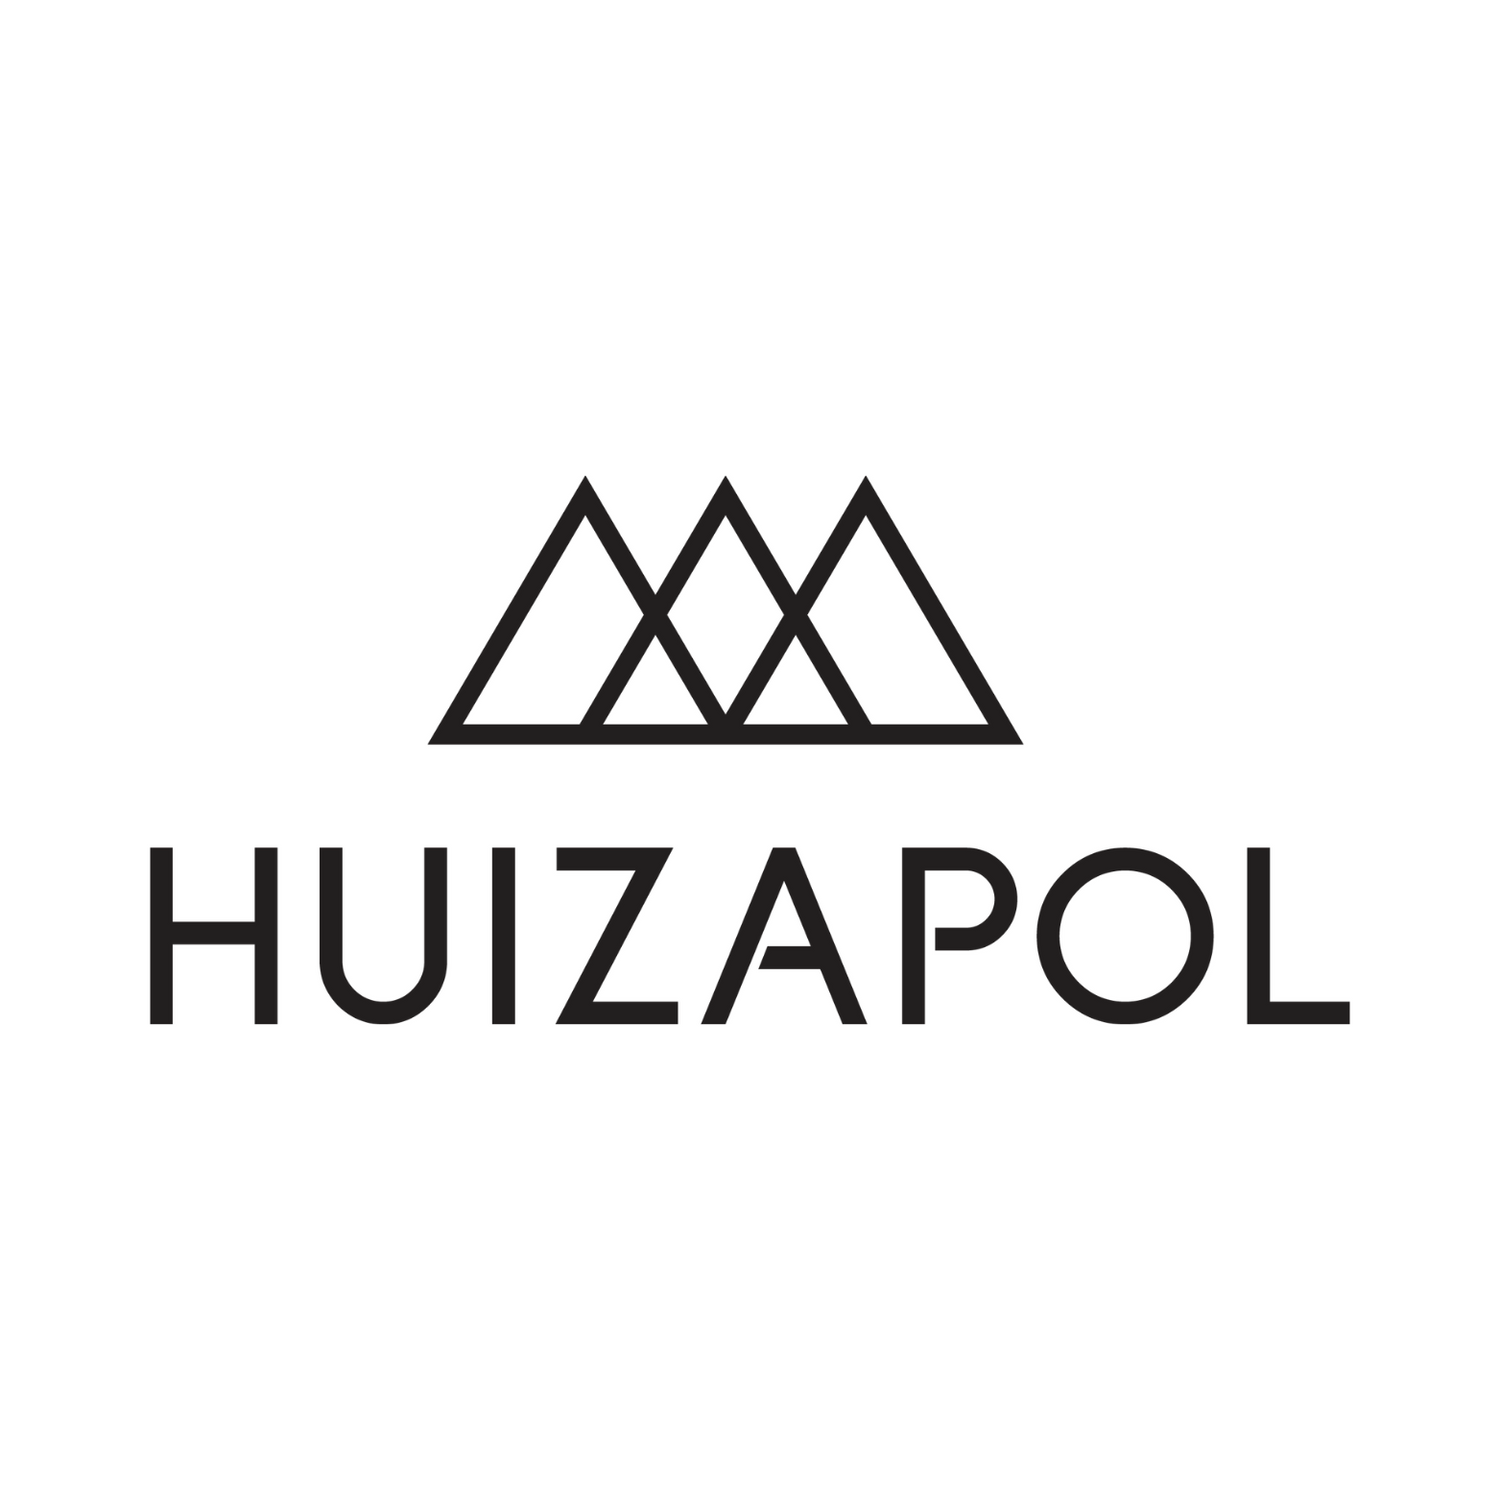 HUIZAPOL